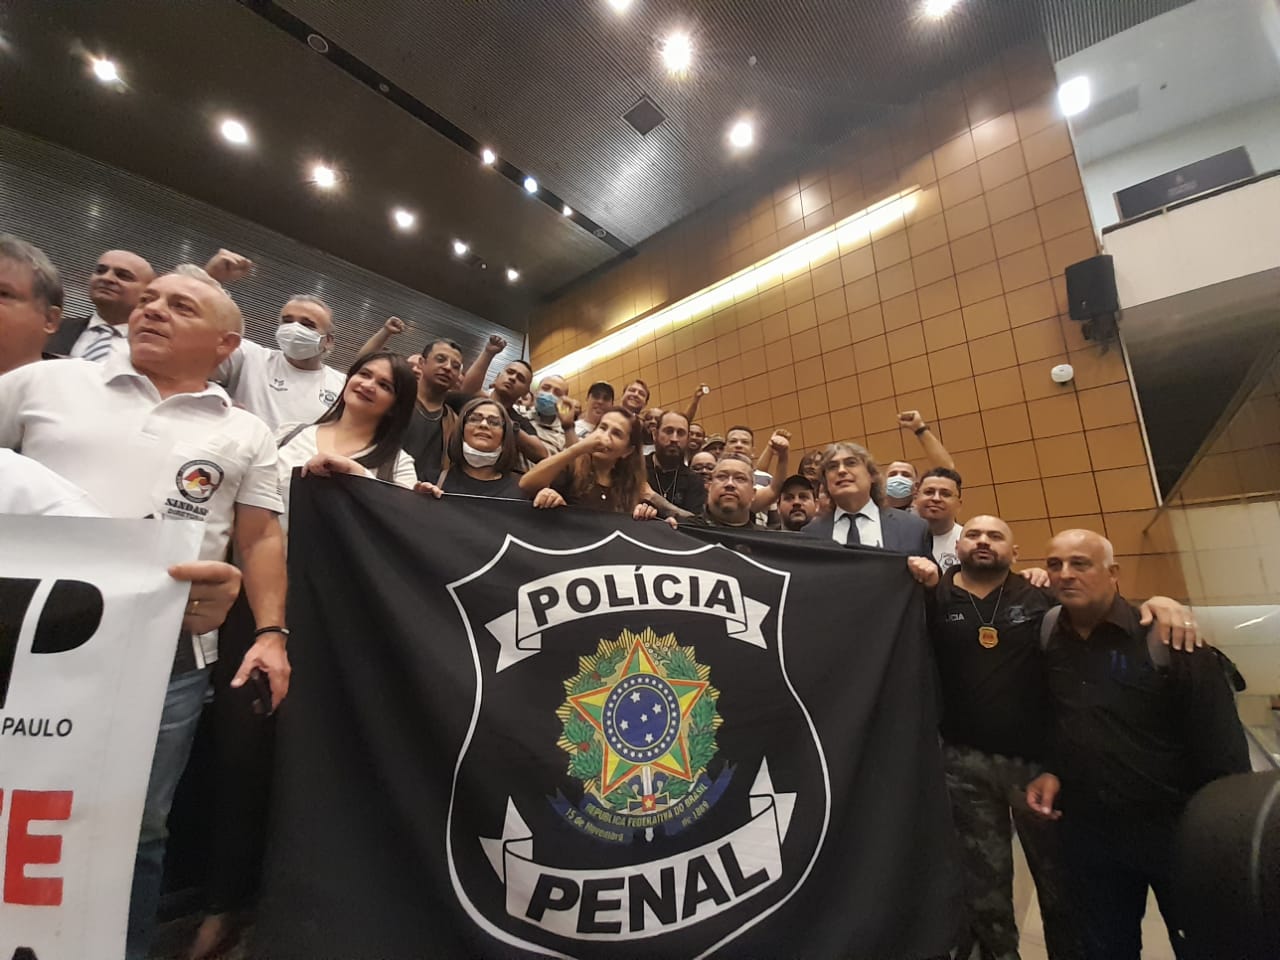 Vitória histórica! PEC da Polícia Penal é aprovada por unanimidade pela Alesp